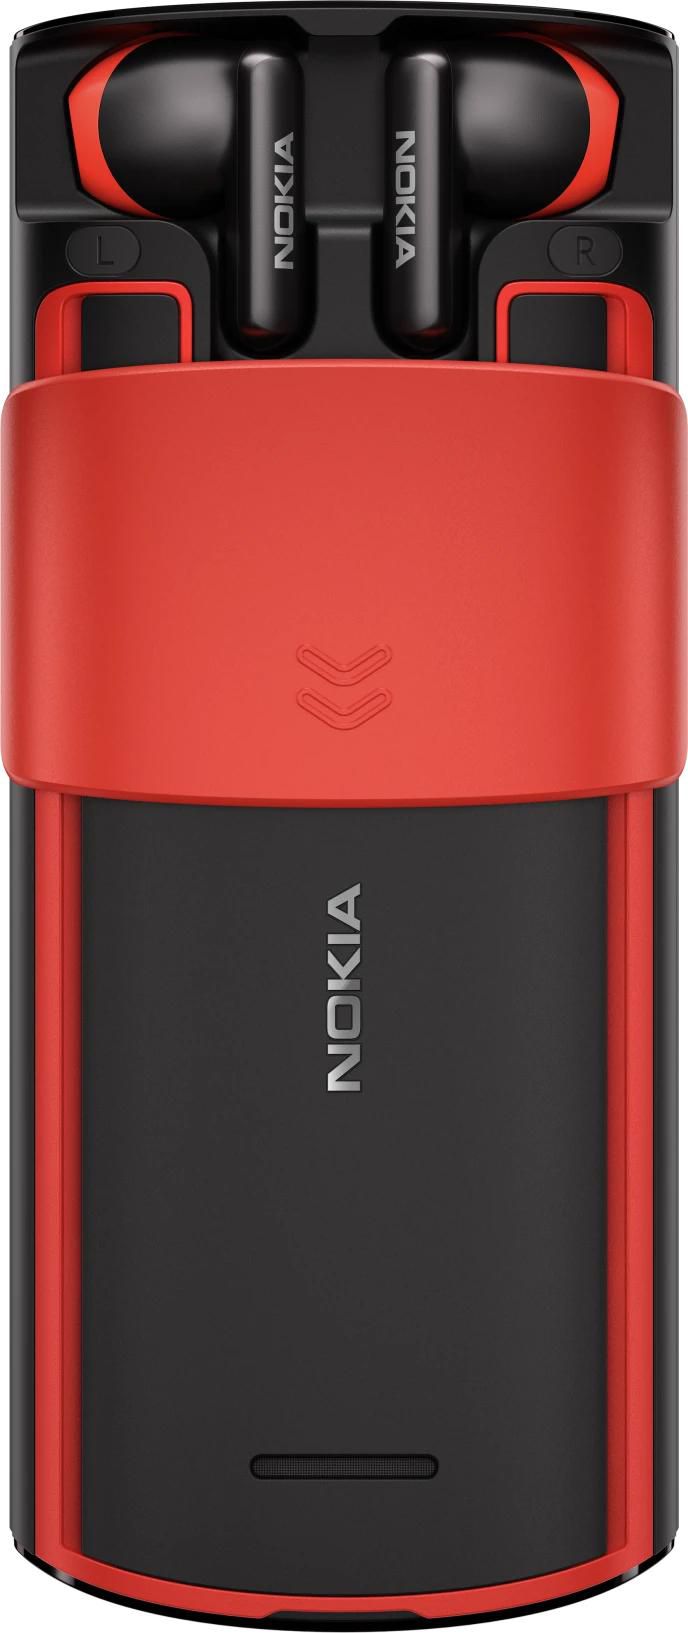 Nokia 16AQUB01A02 W128299669 5710 Xa 6.1 Cm 2.4 129.1 G 